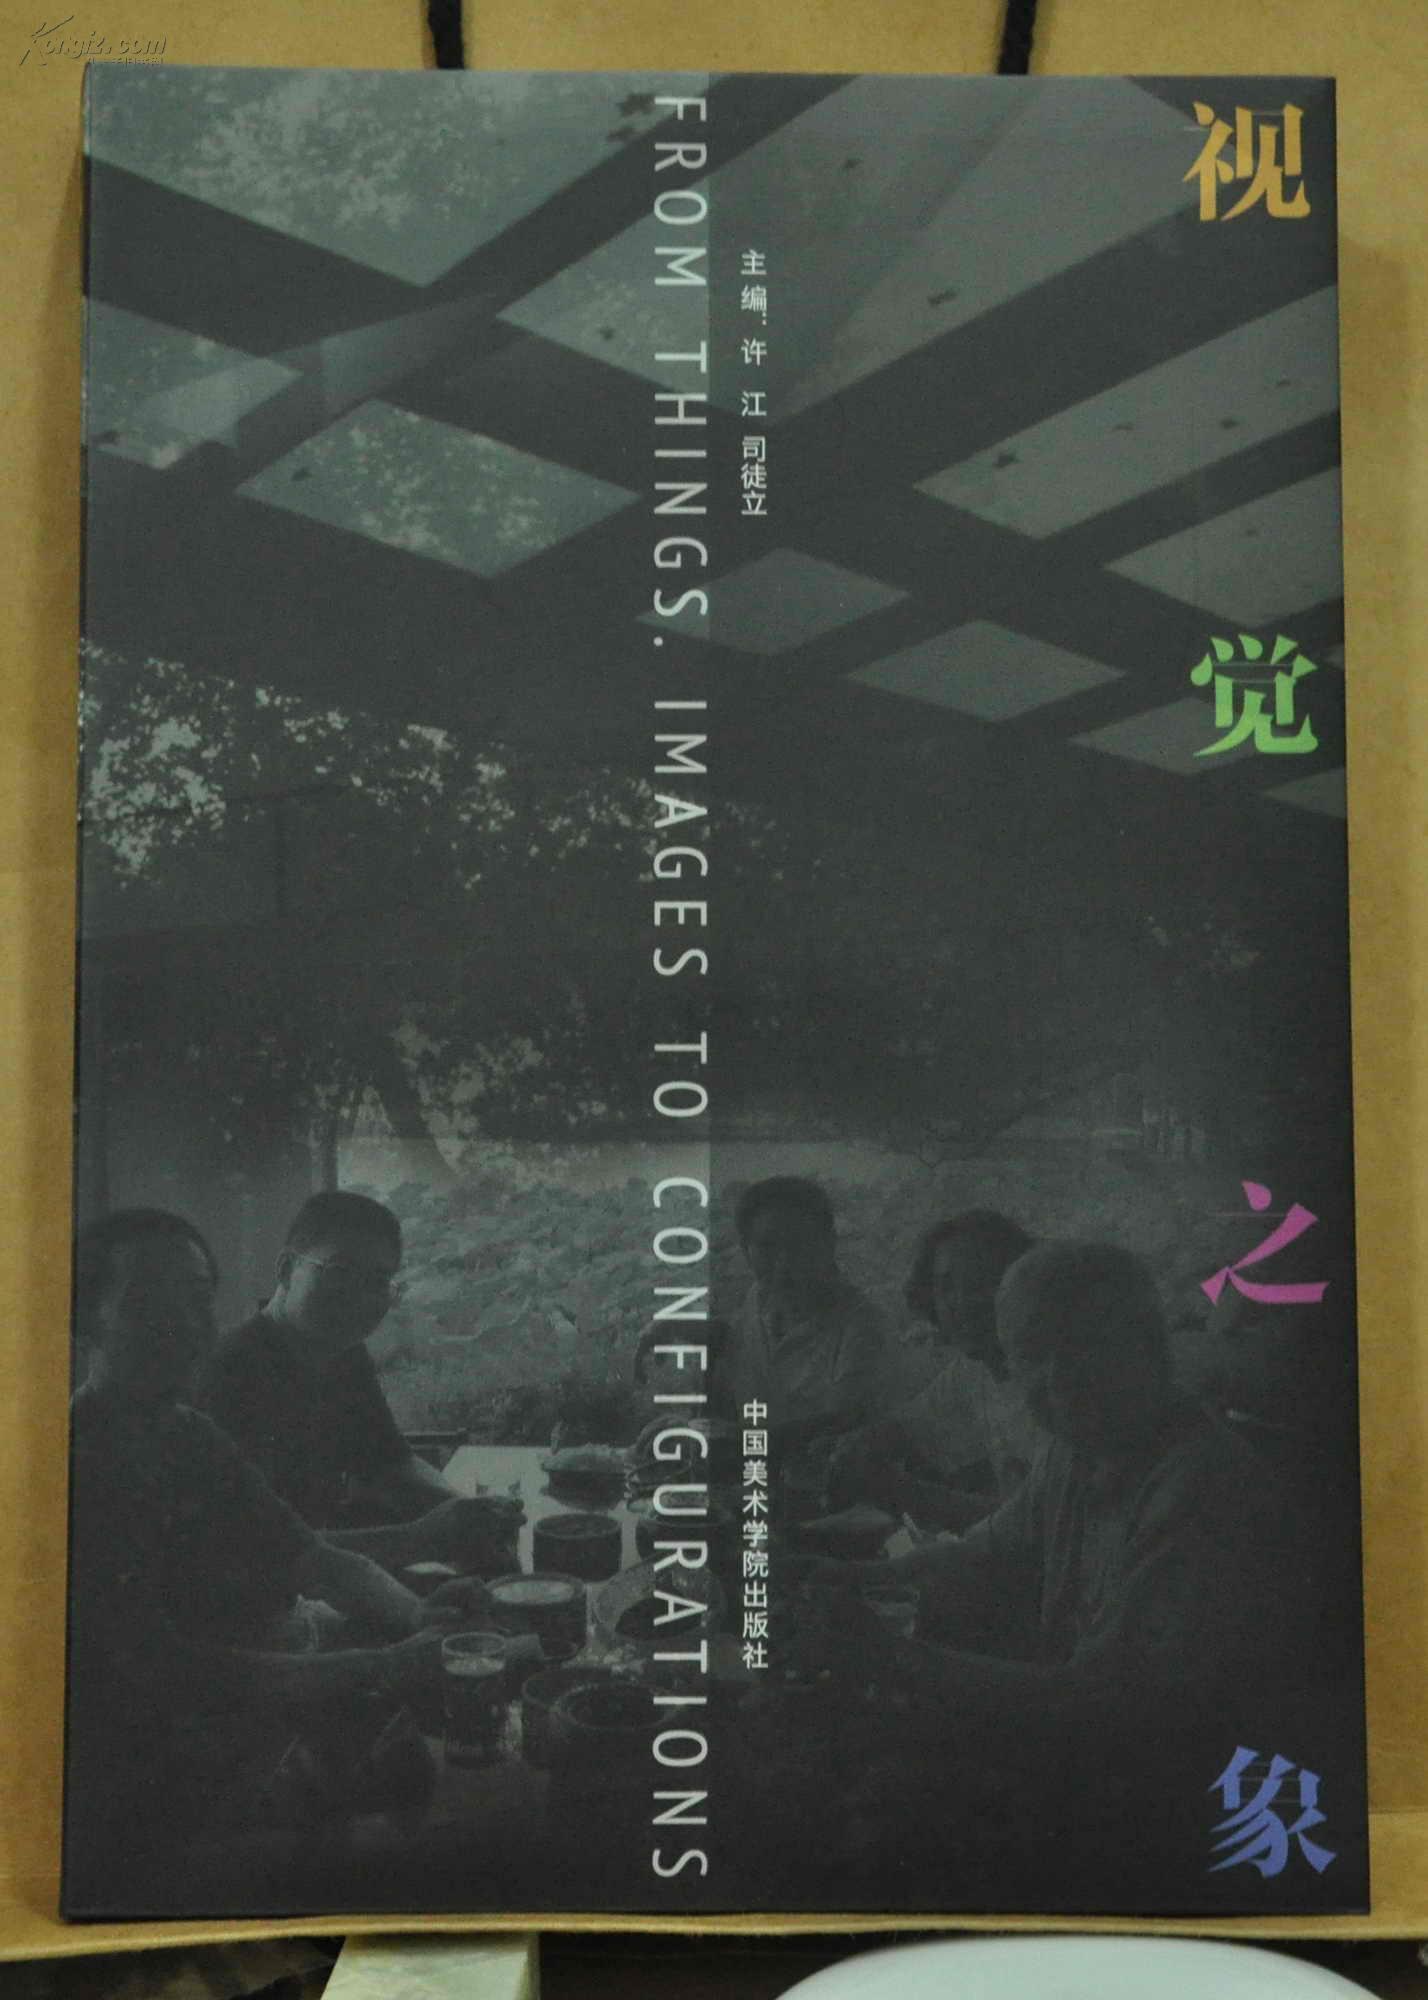 视觉之象（中国美术学院艺术现象学研究所年度展）许江 司徒立